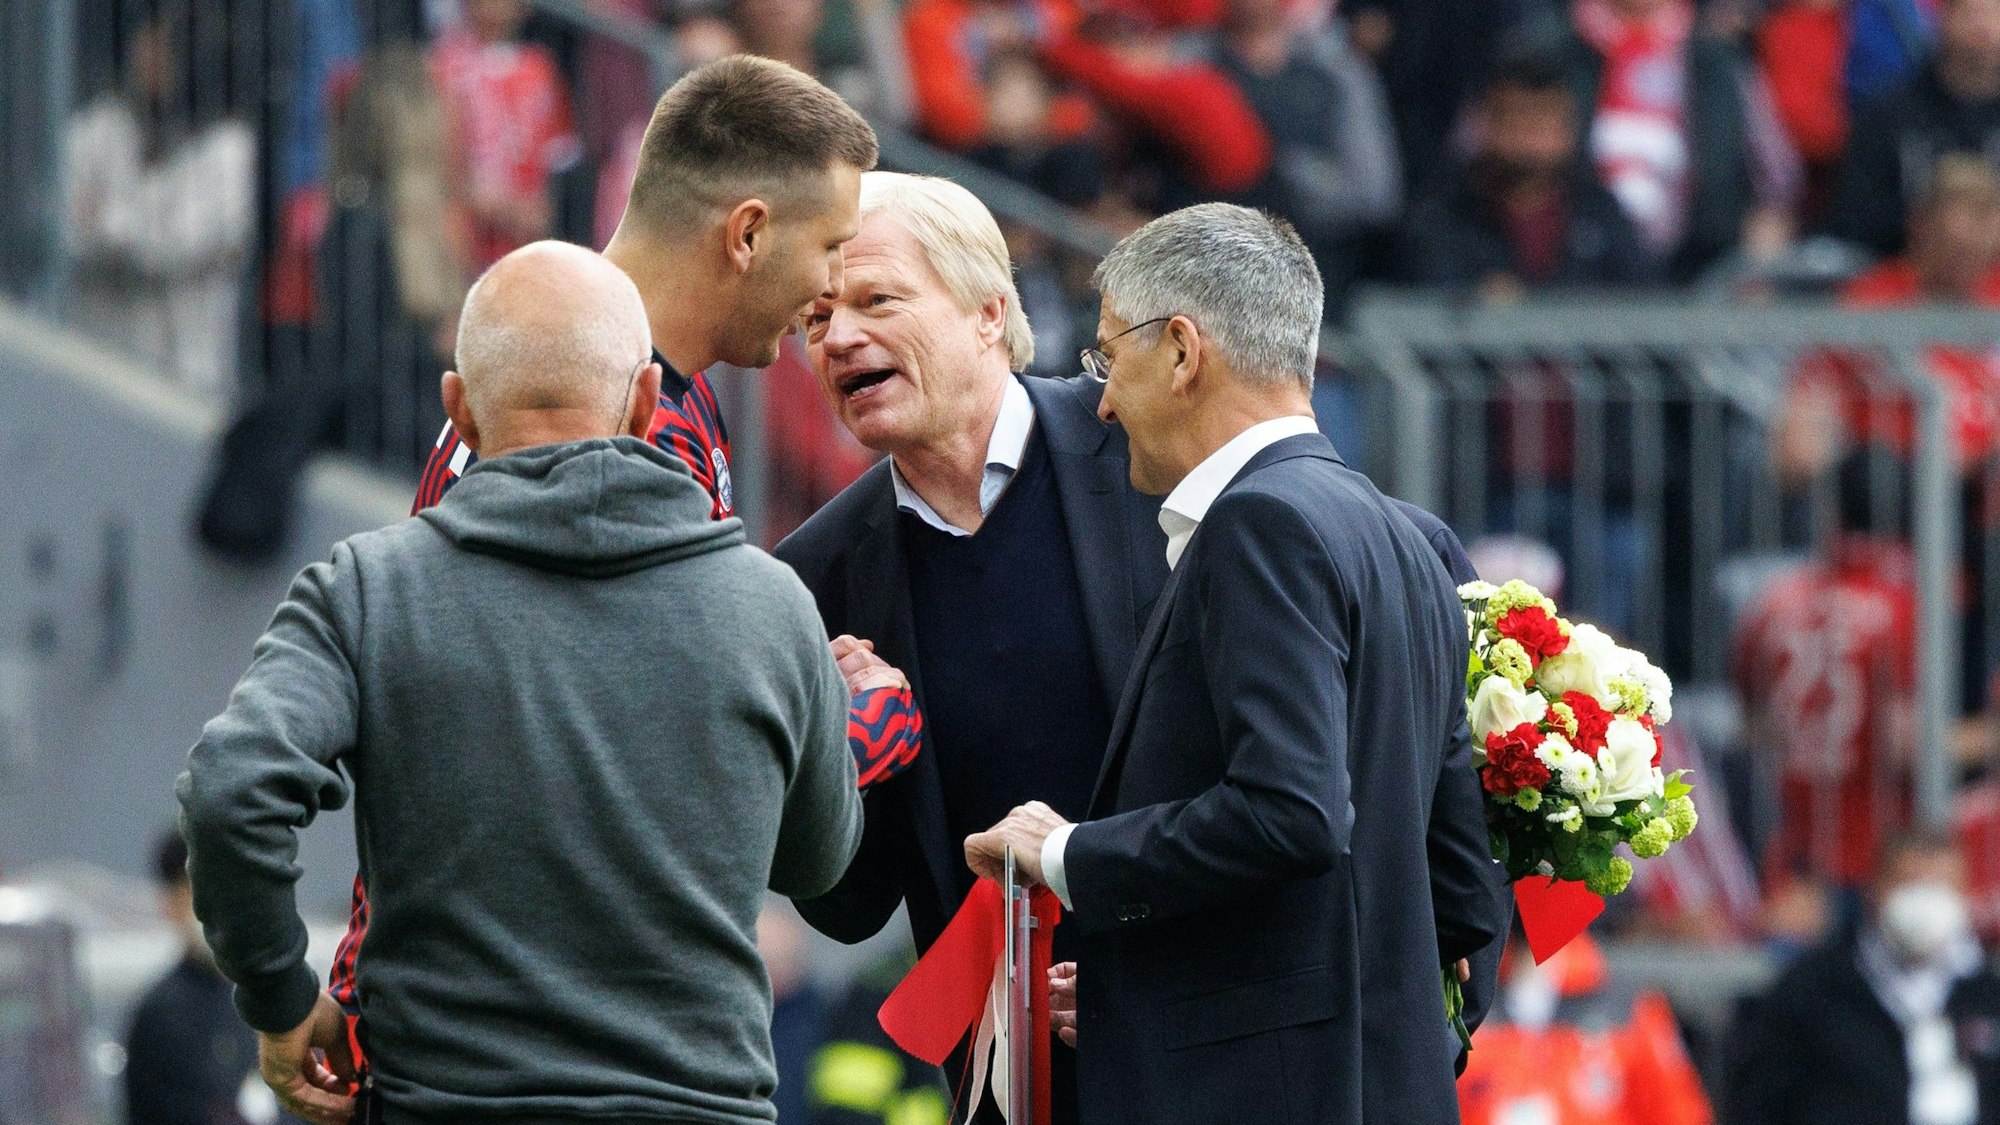 Oliver Kahn (2.v.r.) und Niklas Süle (2.v.l.) sprechen bei dessen Verabschiedung als Spieler des FC Bayern München.